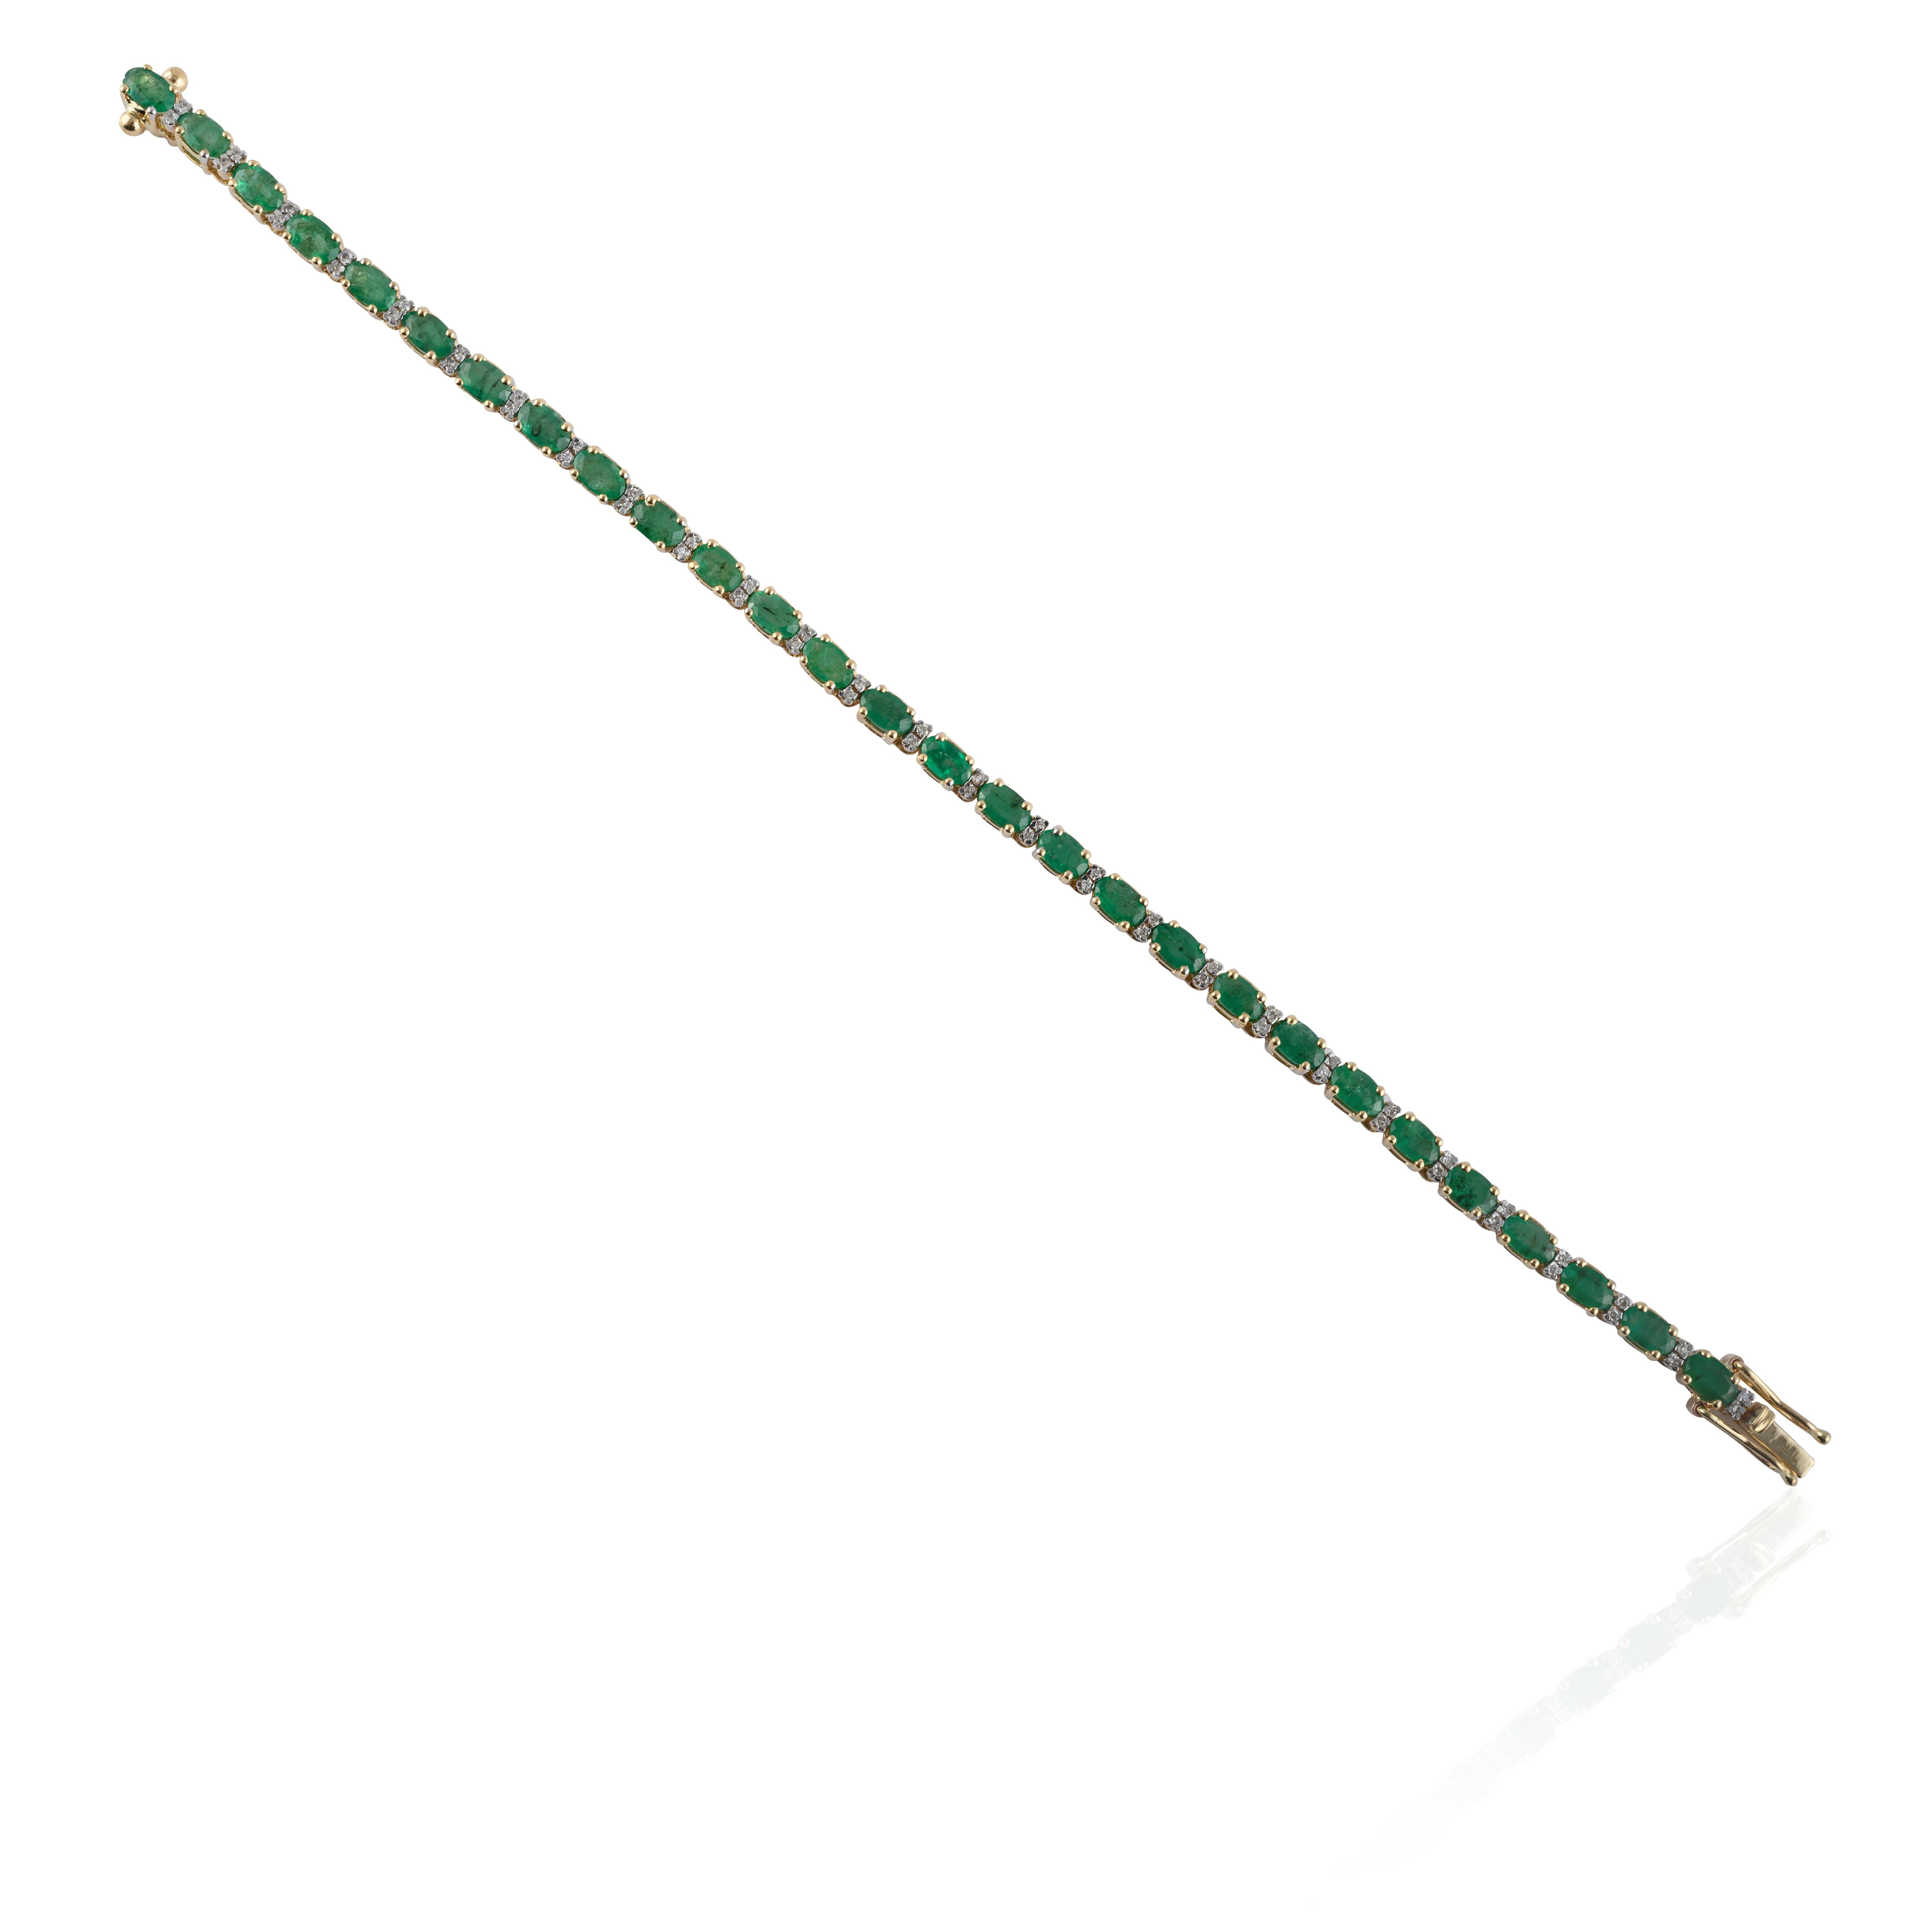 Ce Glorious Emerald Diamond Tennis Bracelet en or 14 carats met en valeur 28 émeraudes naturelles étincelantes à l'infini, pesant 6,01 carats. Il mesure 7 pouces de long. 
L'émeraude renforce les capacités intellectuelles de la personne.
Conçue avec